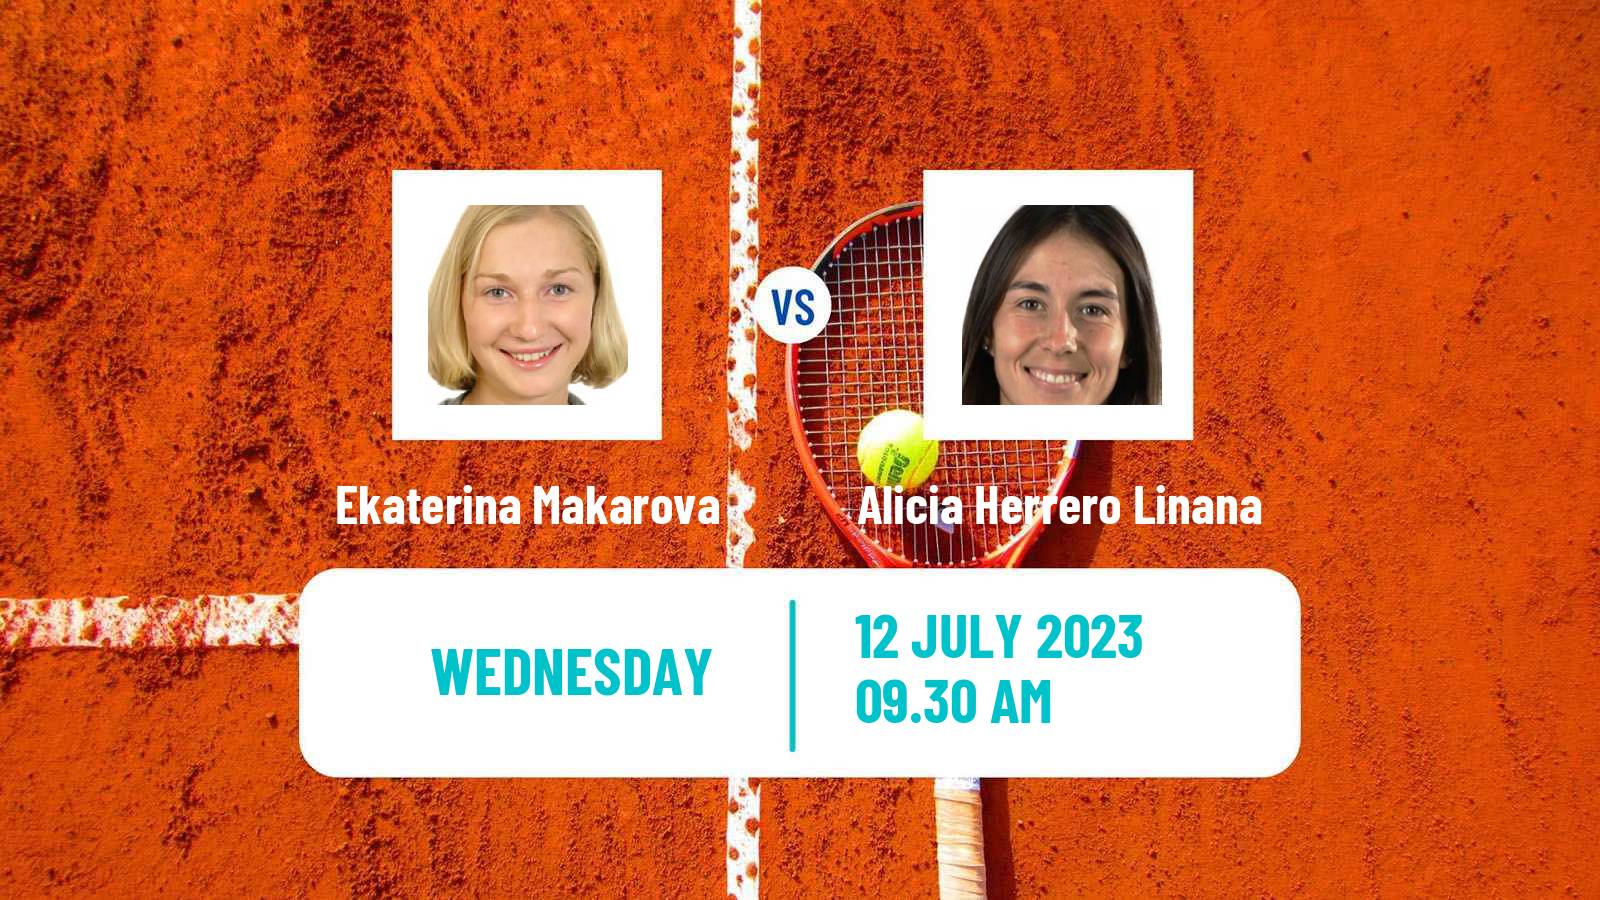 Tennis ITF W25 Punta Cana 2 Women Ekaterina Makarova - Alicia Herrero Linana